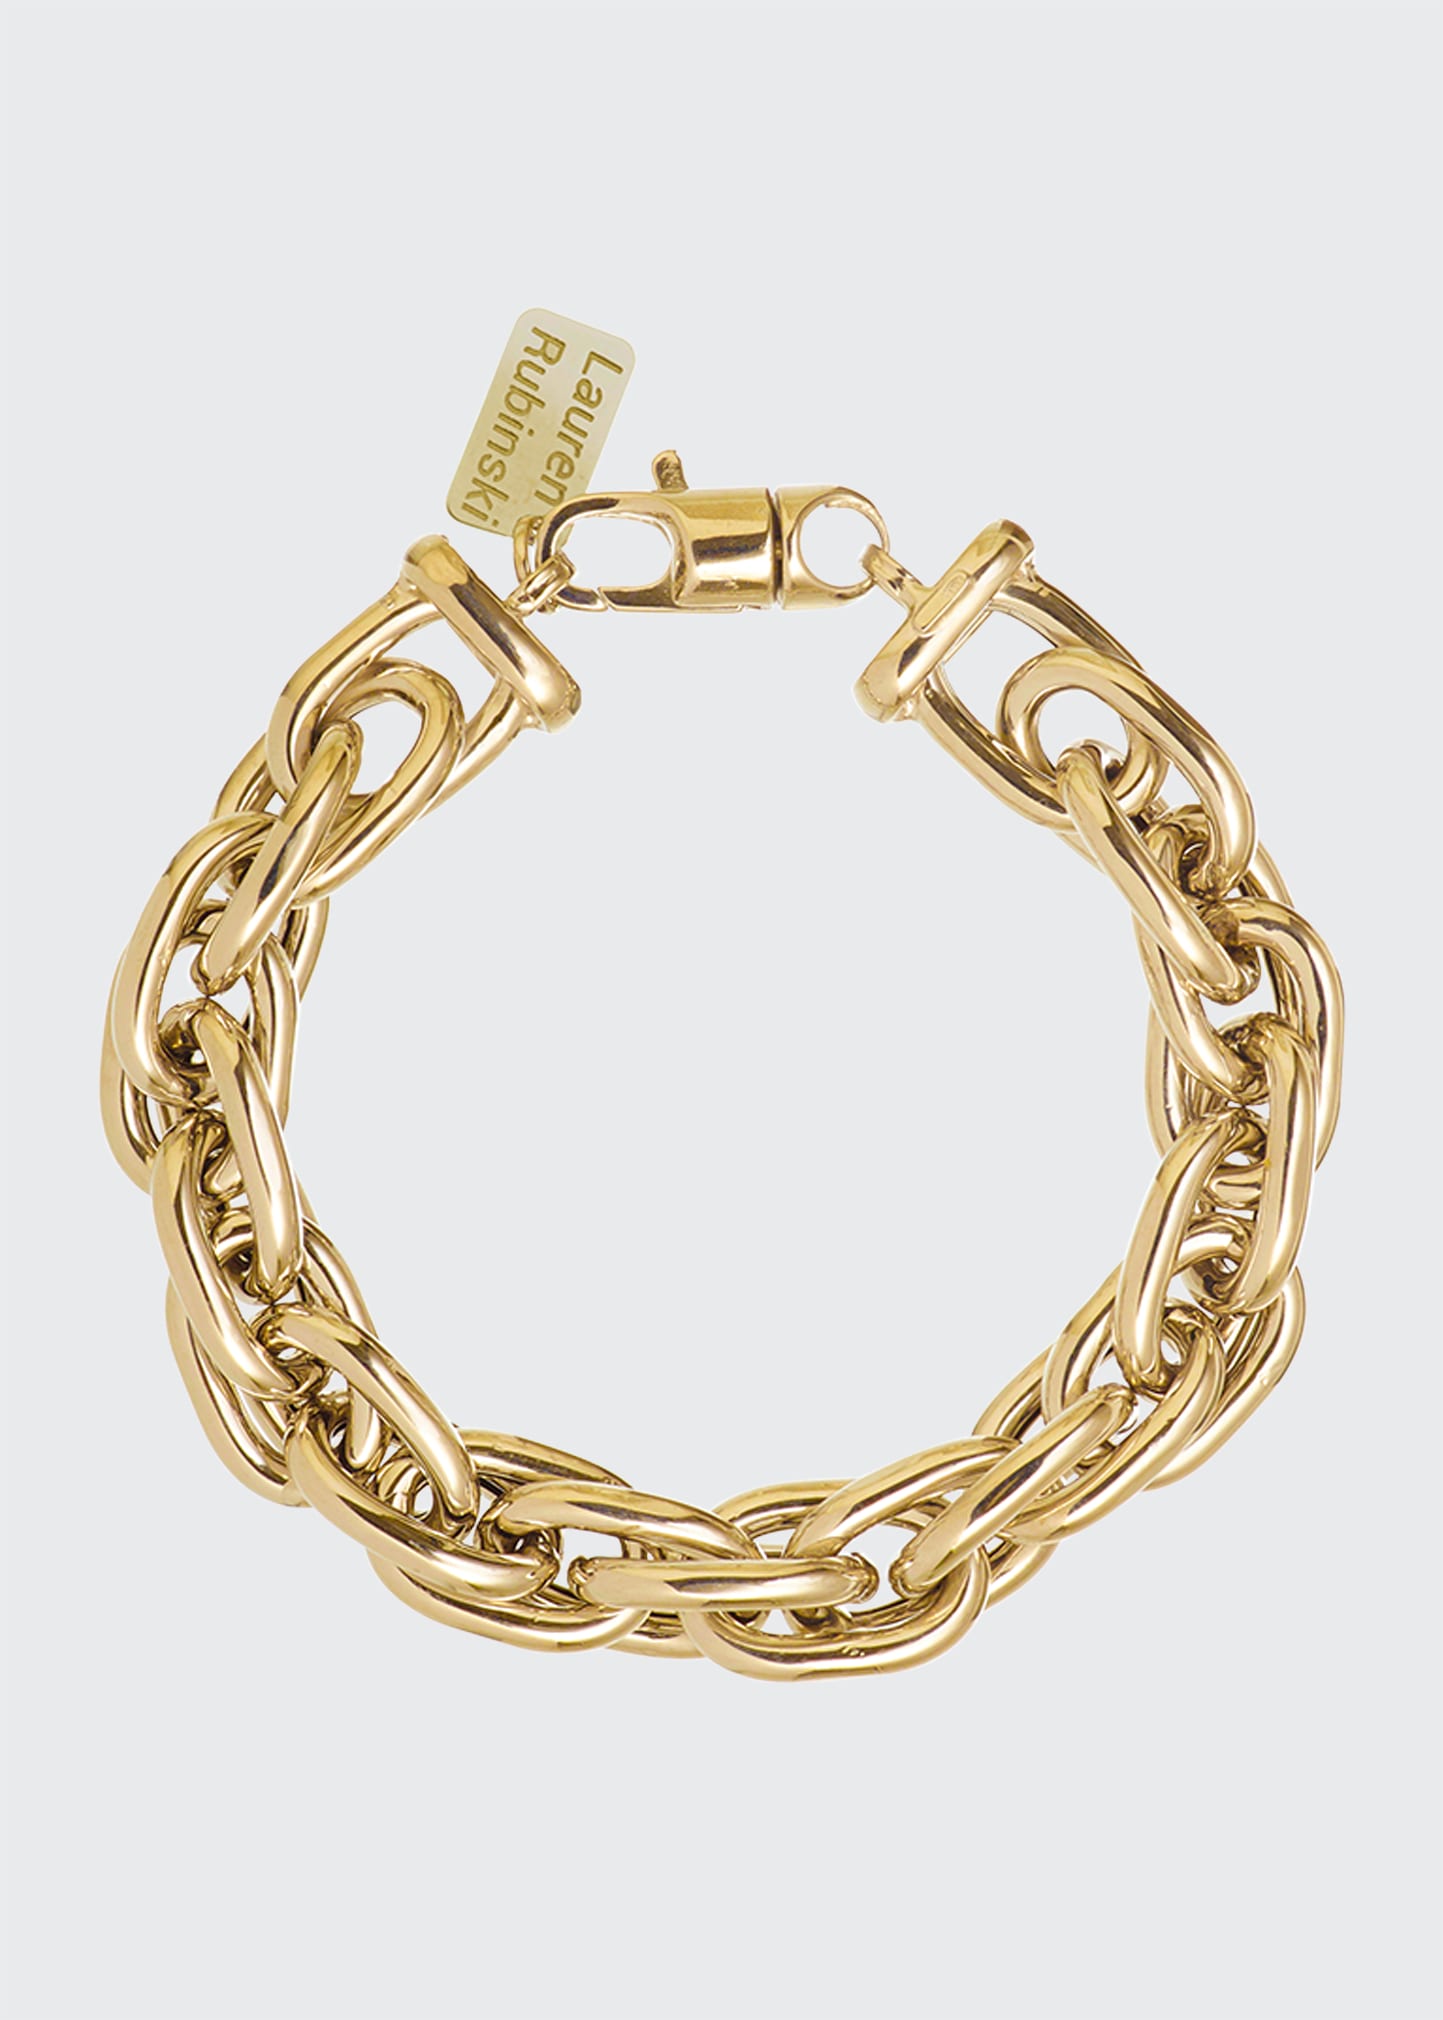 Lauren Rubinski LR2 Small 14k Yellow Gold Bracelet